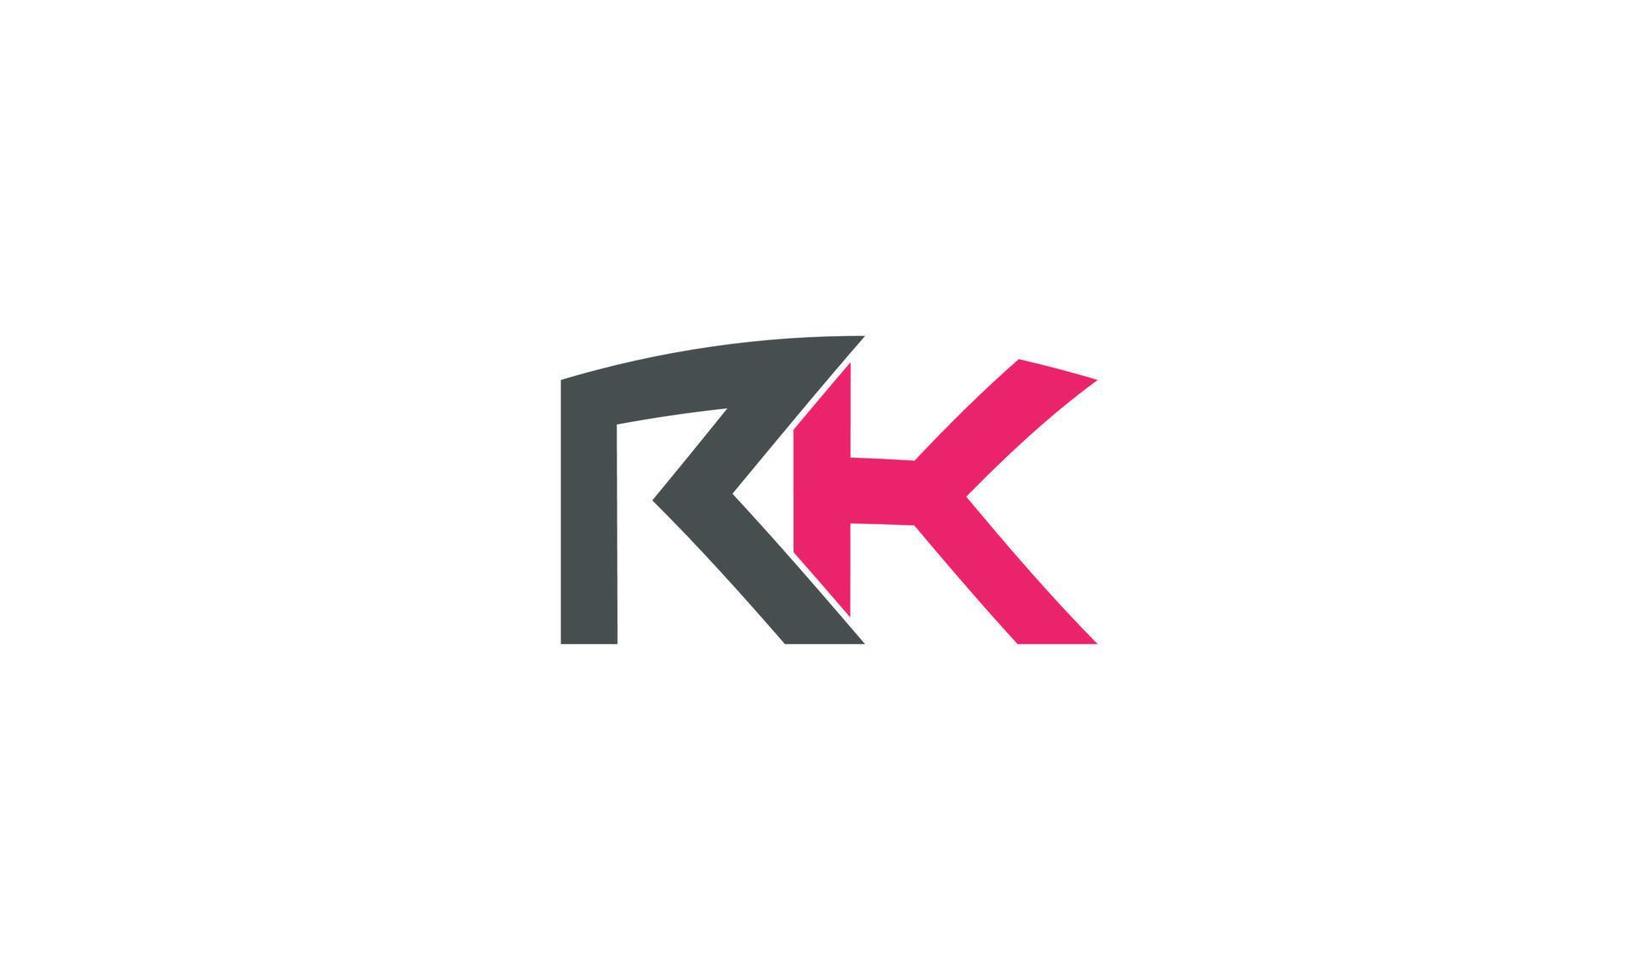 alphabet lettres initiales monogramme logo rk, kr, r et k vecteur